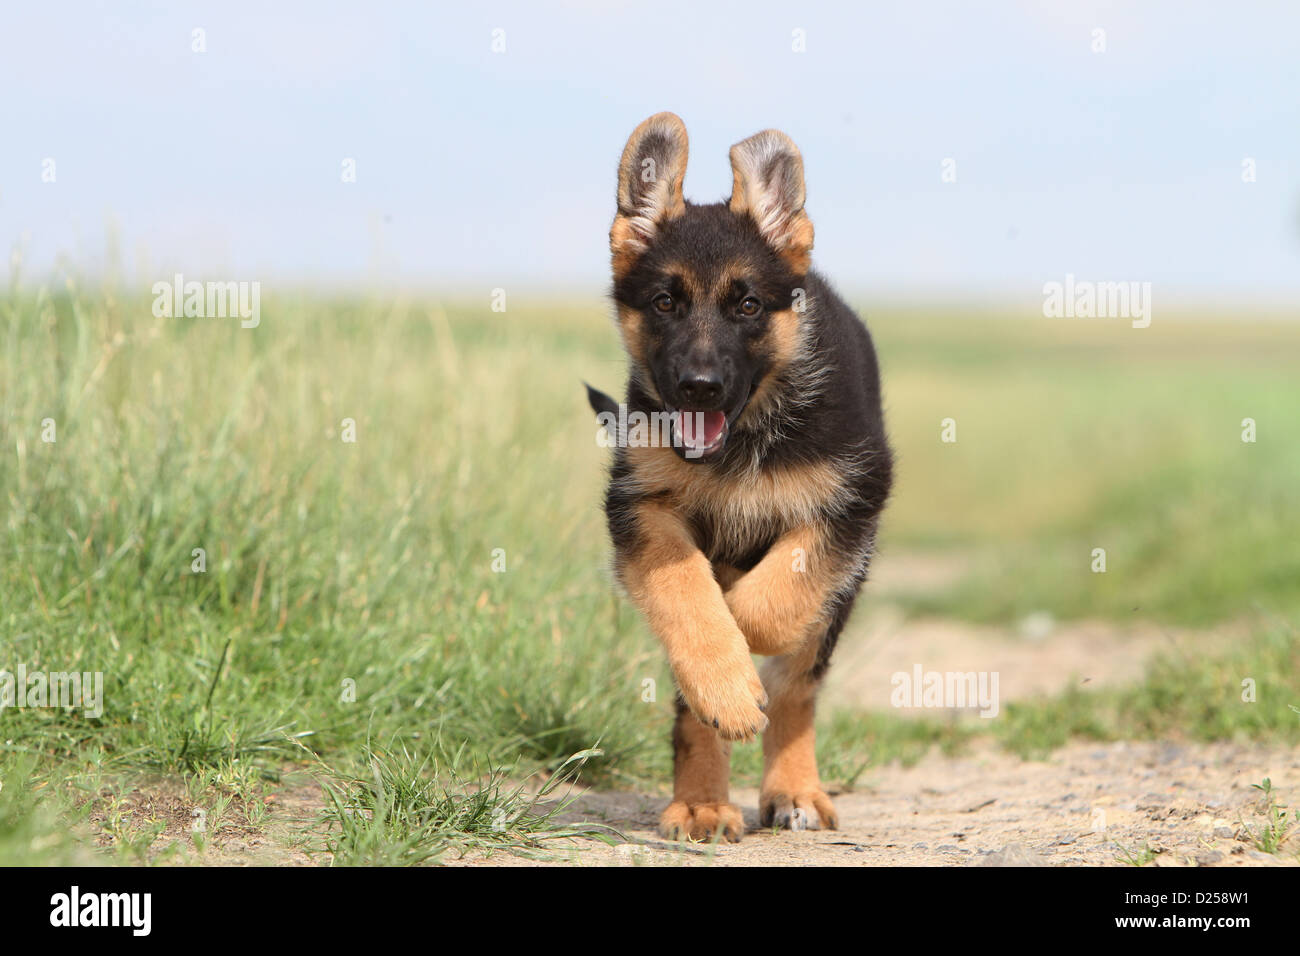 Dog German Shepherd Dog / Deutscher Schäferhund puppy running in a field Stock Photo